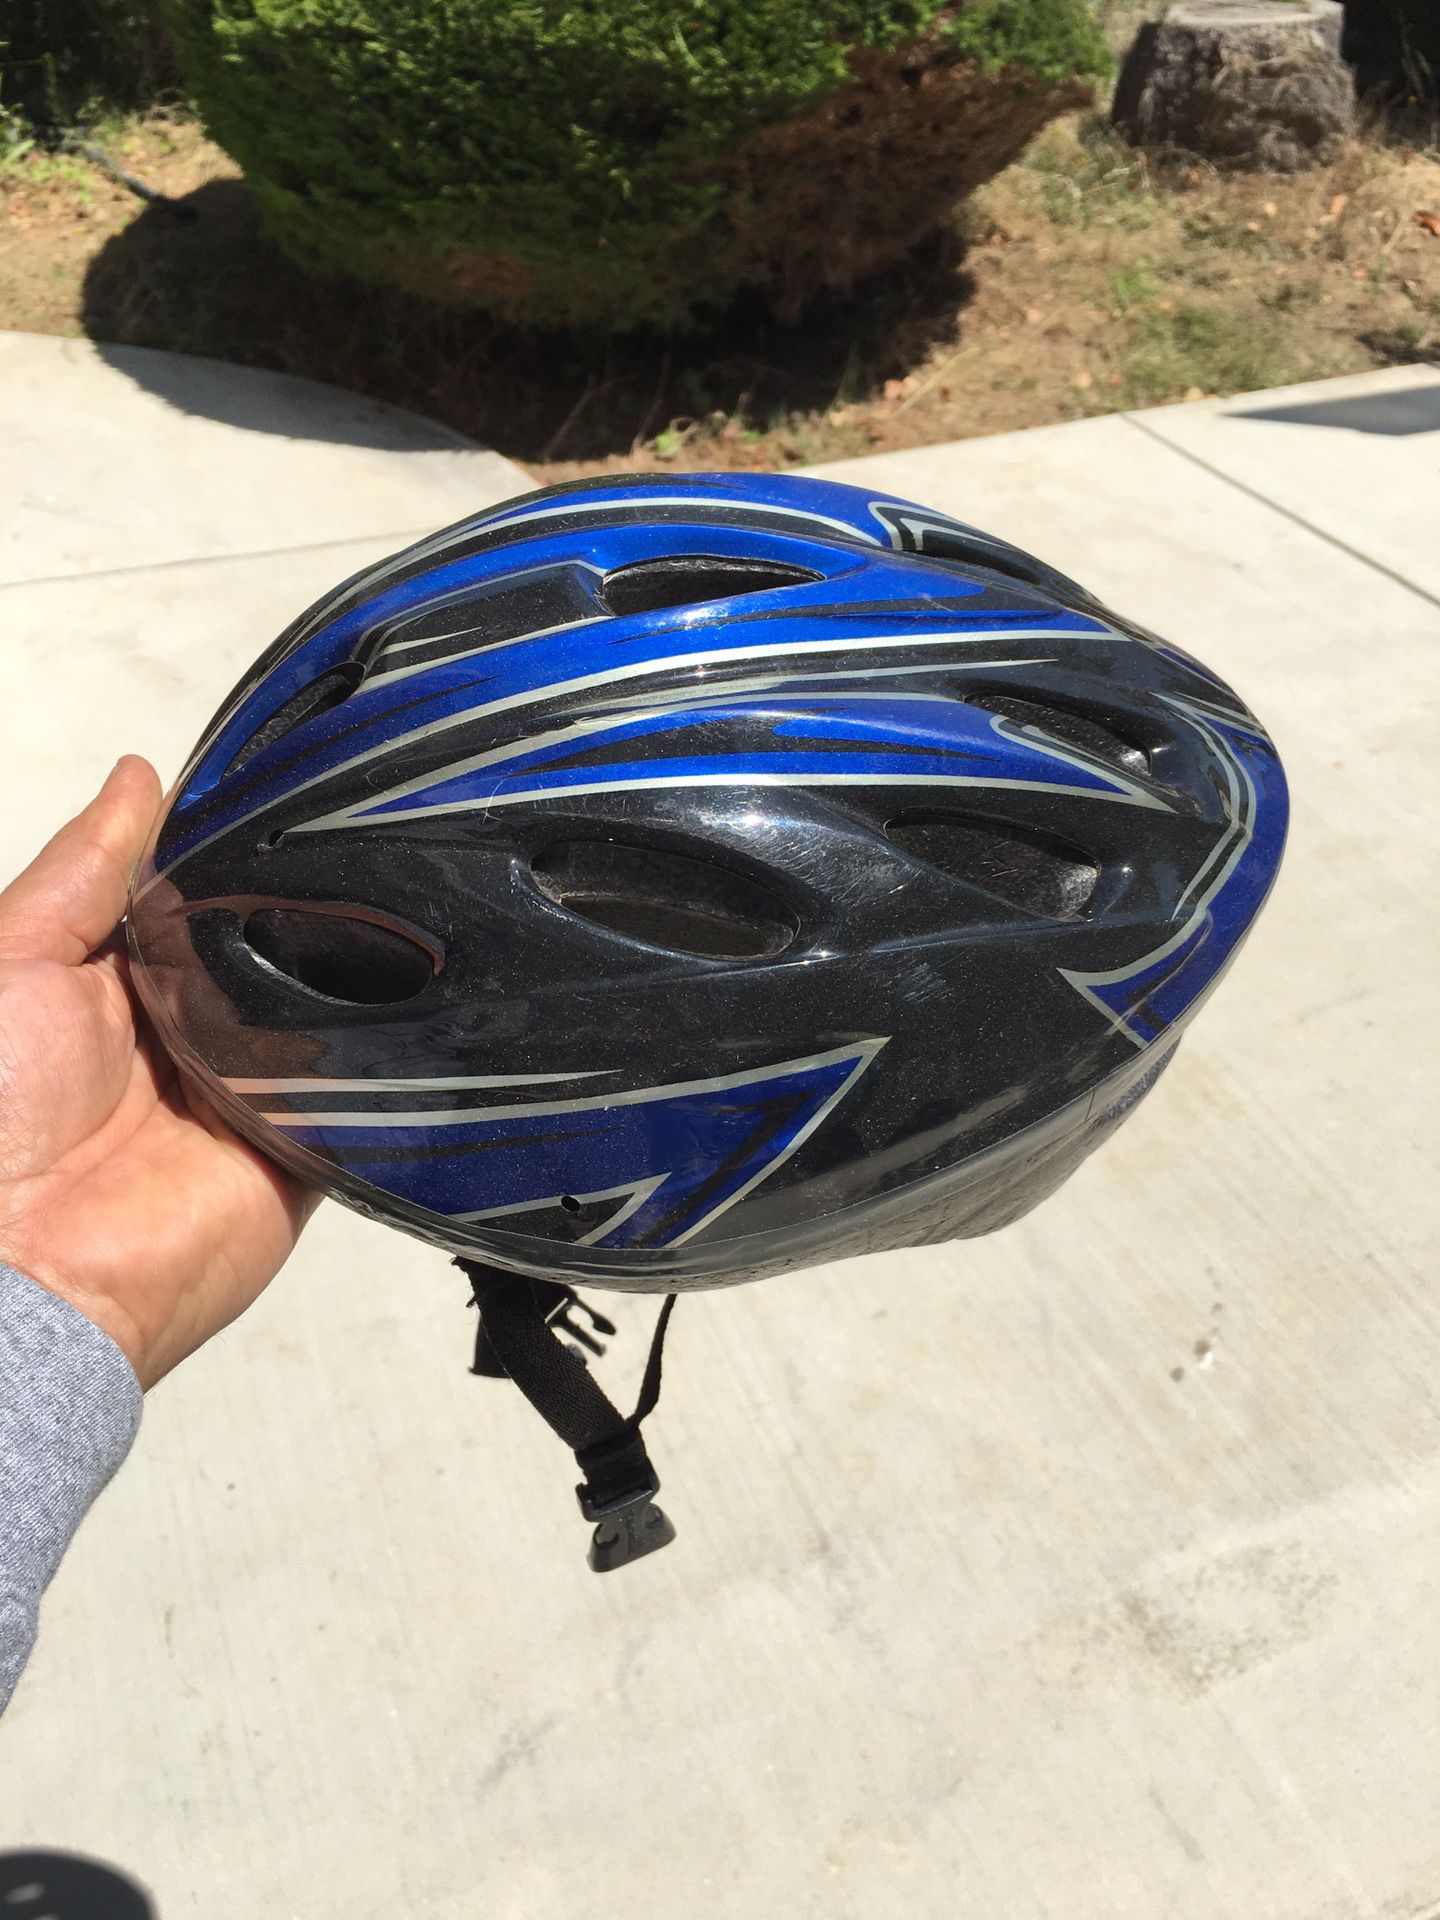 Youth bike helmet (used)